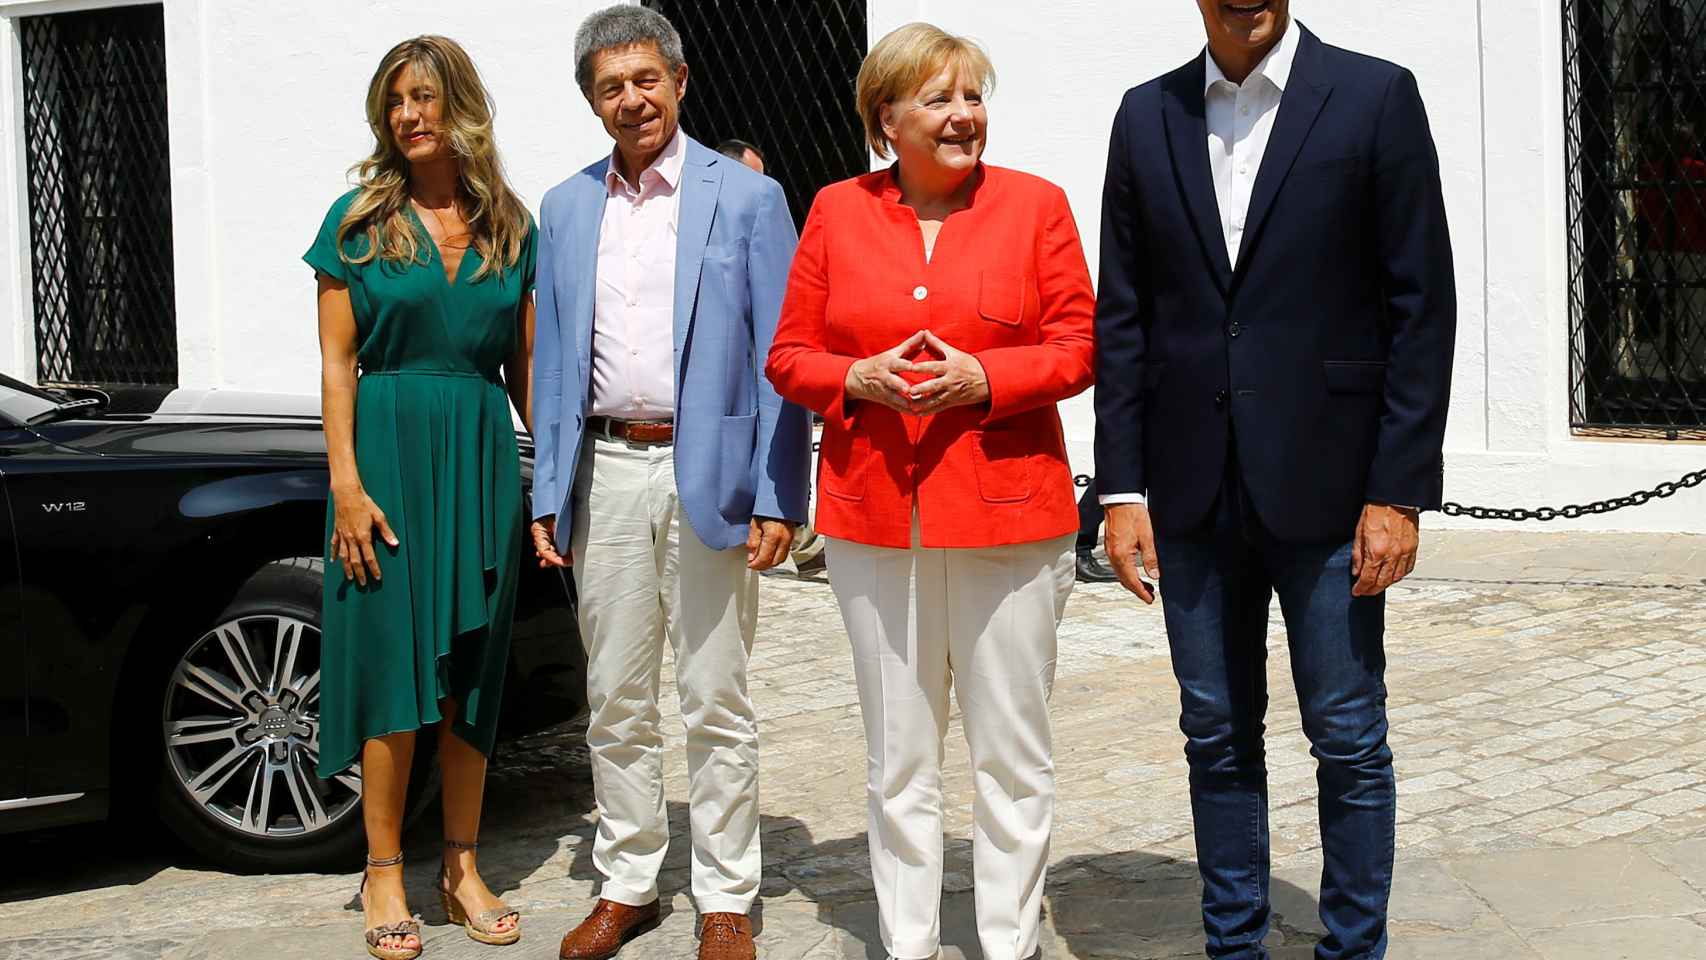 Pedro Sánchez y Angela Merkel, junto a sus respectivas parejas en el Palacio de los Gazules.